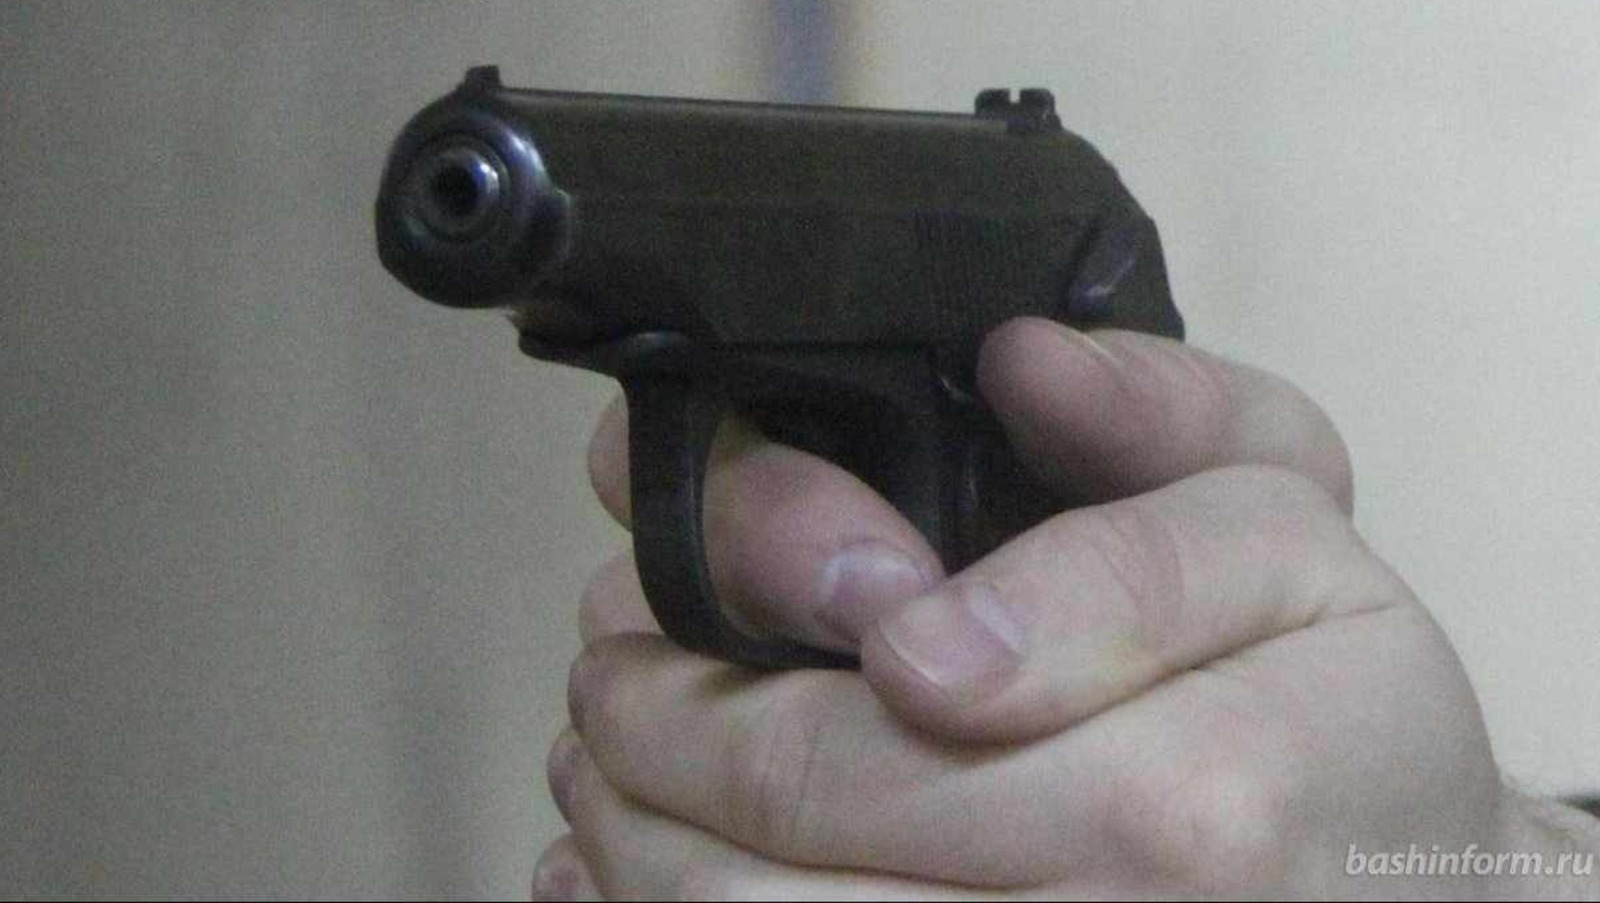 Житель Республики Башкортостан оставил в пиццерии сумку, в которой находился пистолет